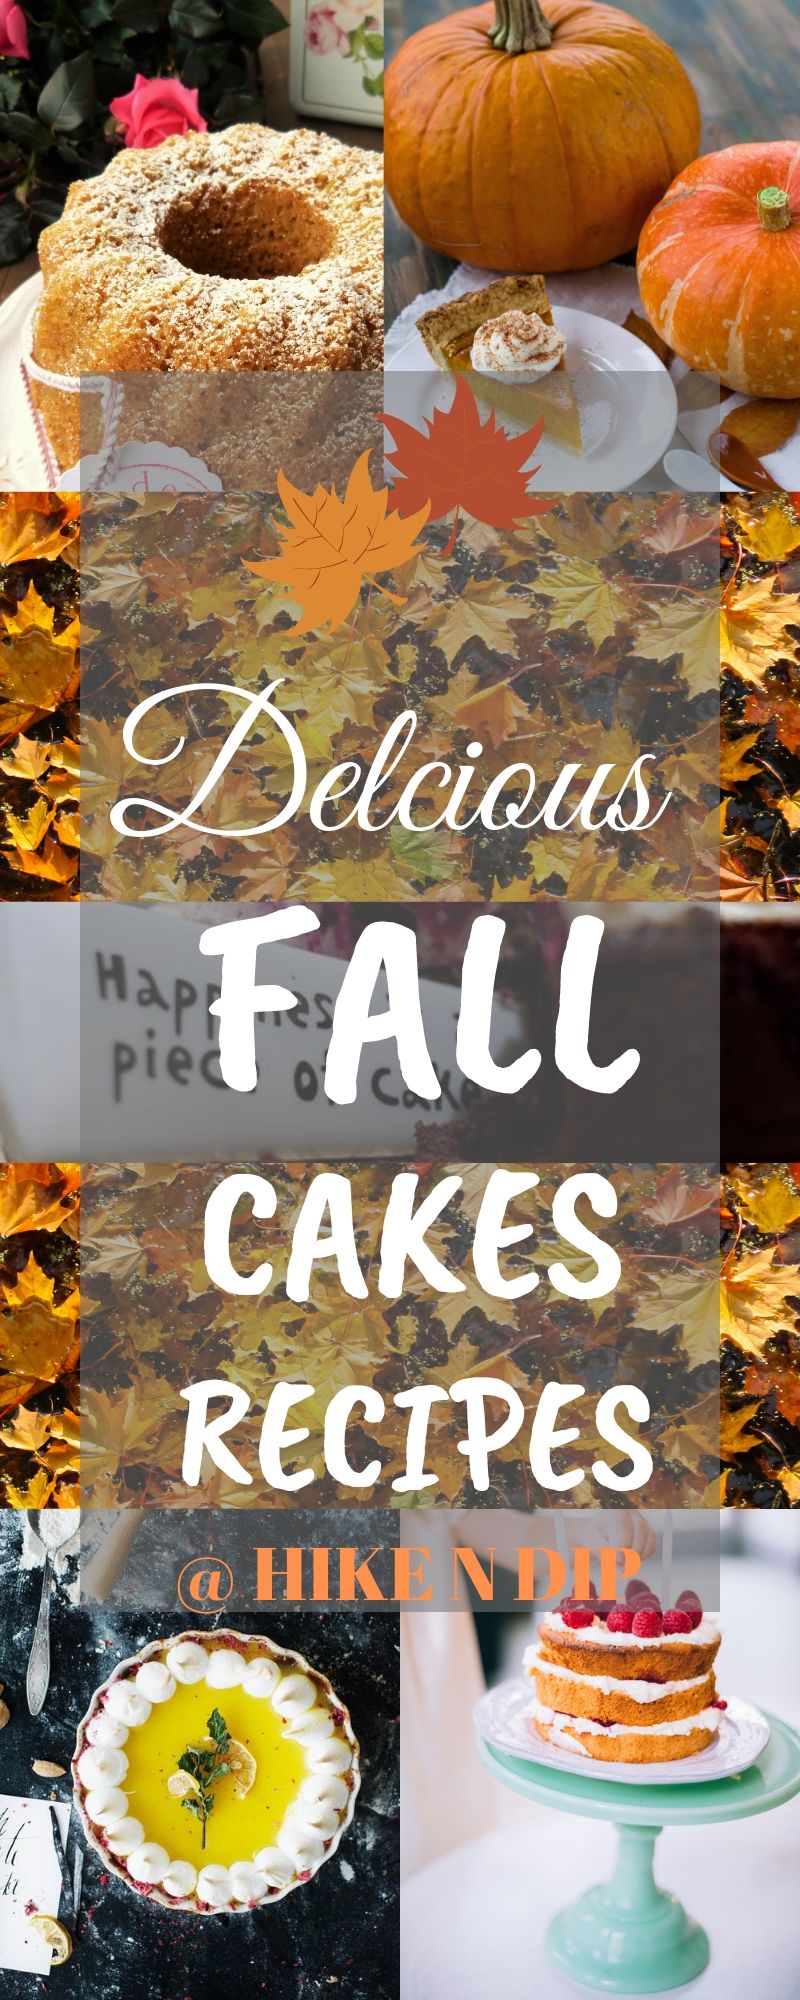 Fall cakes recipes